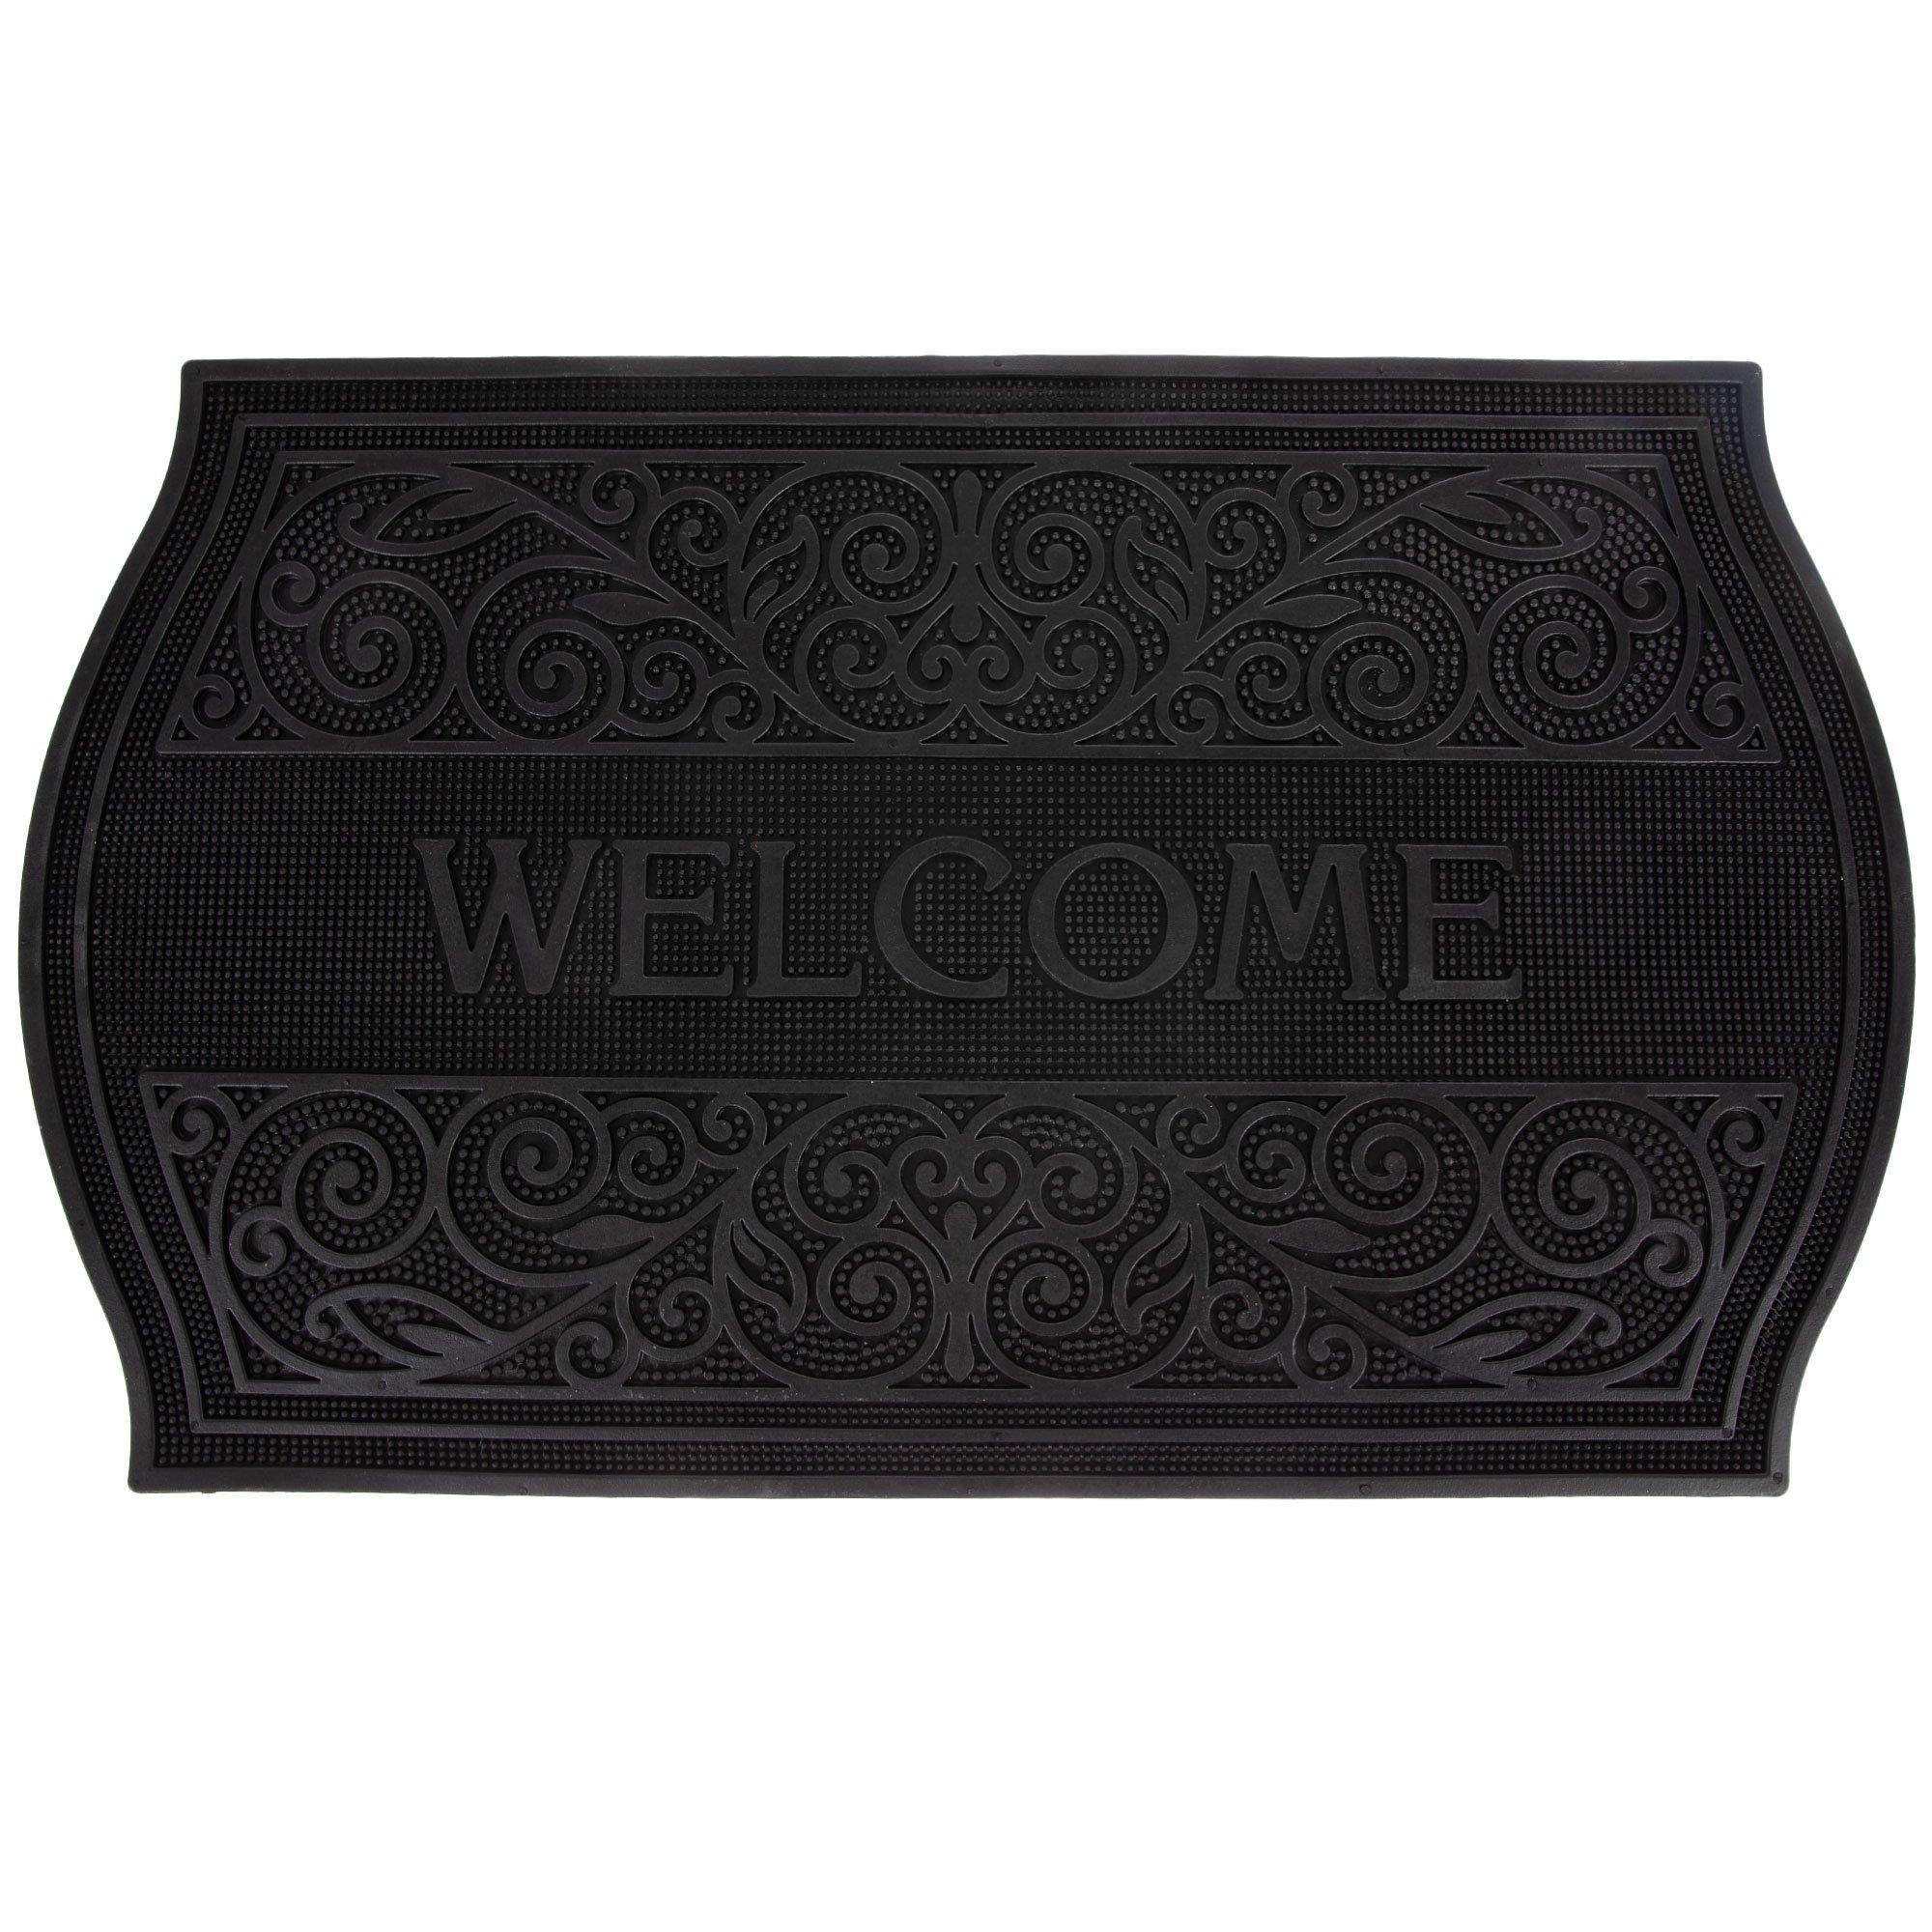 Black Welcome Doormat - Love it!